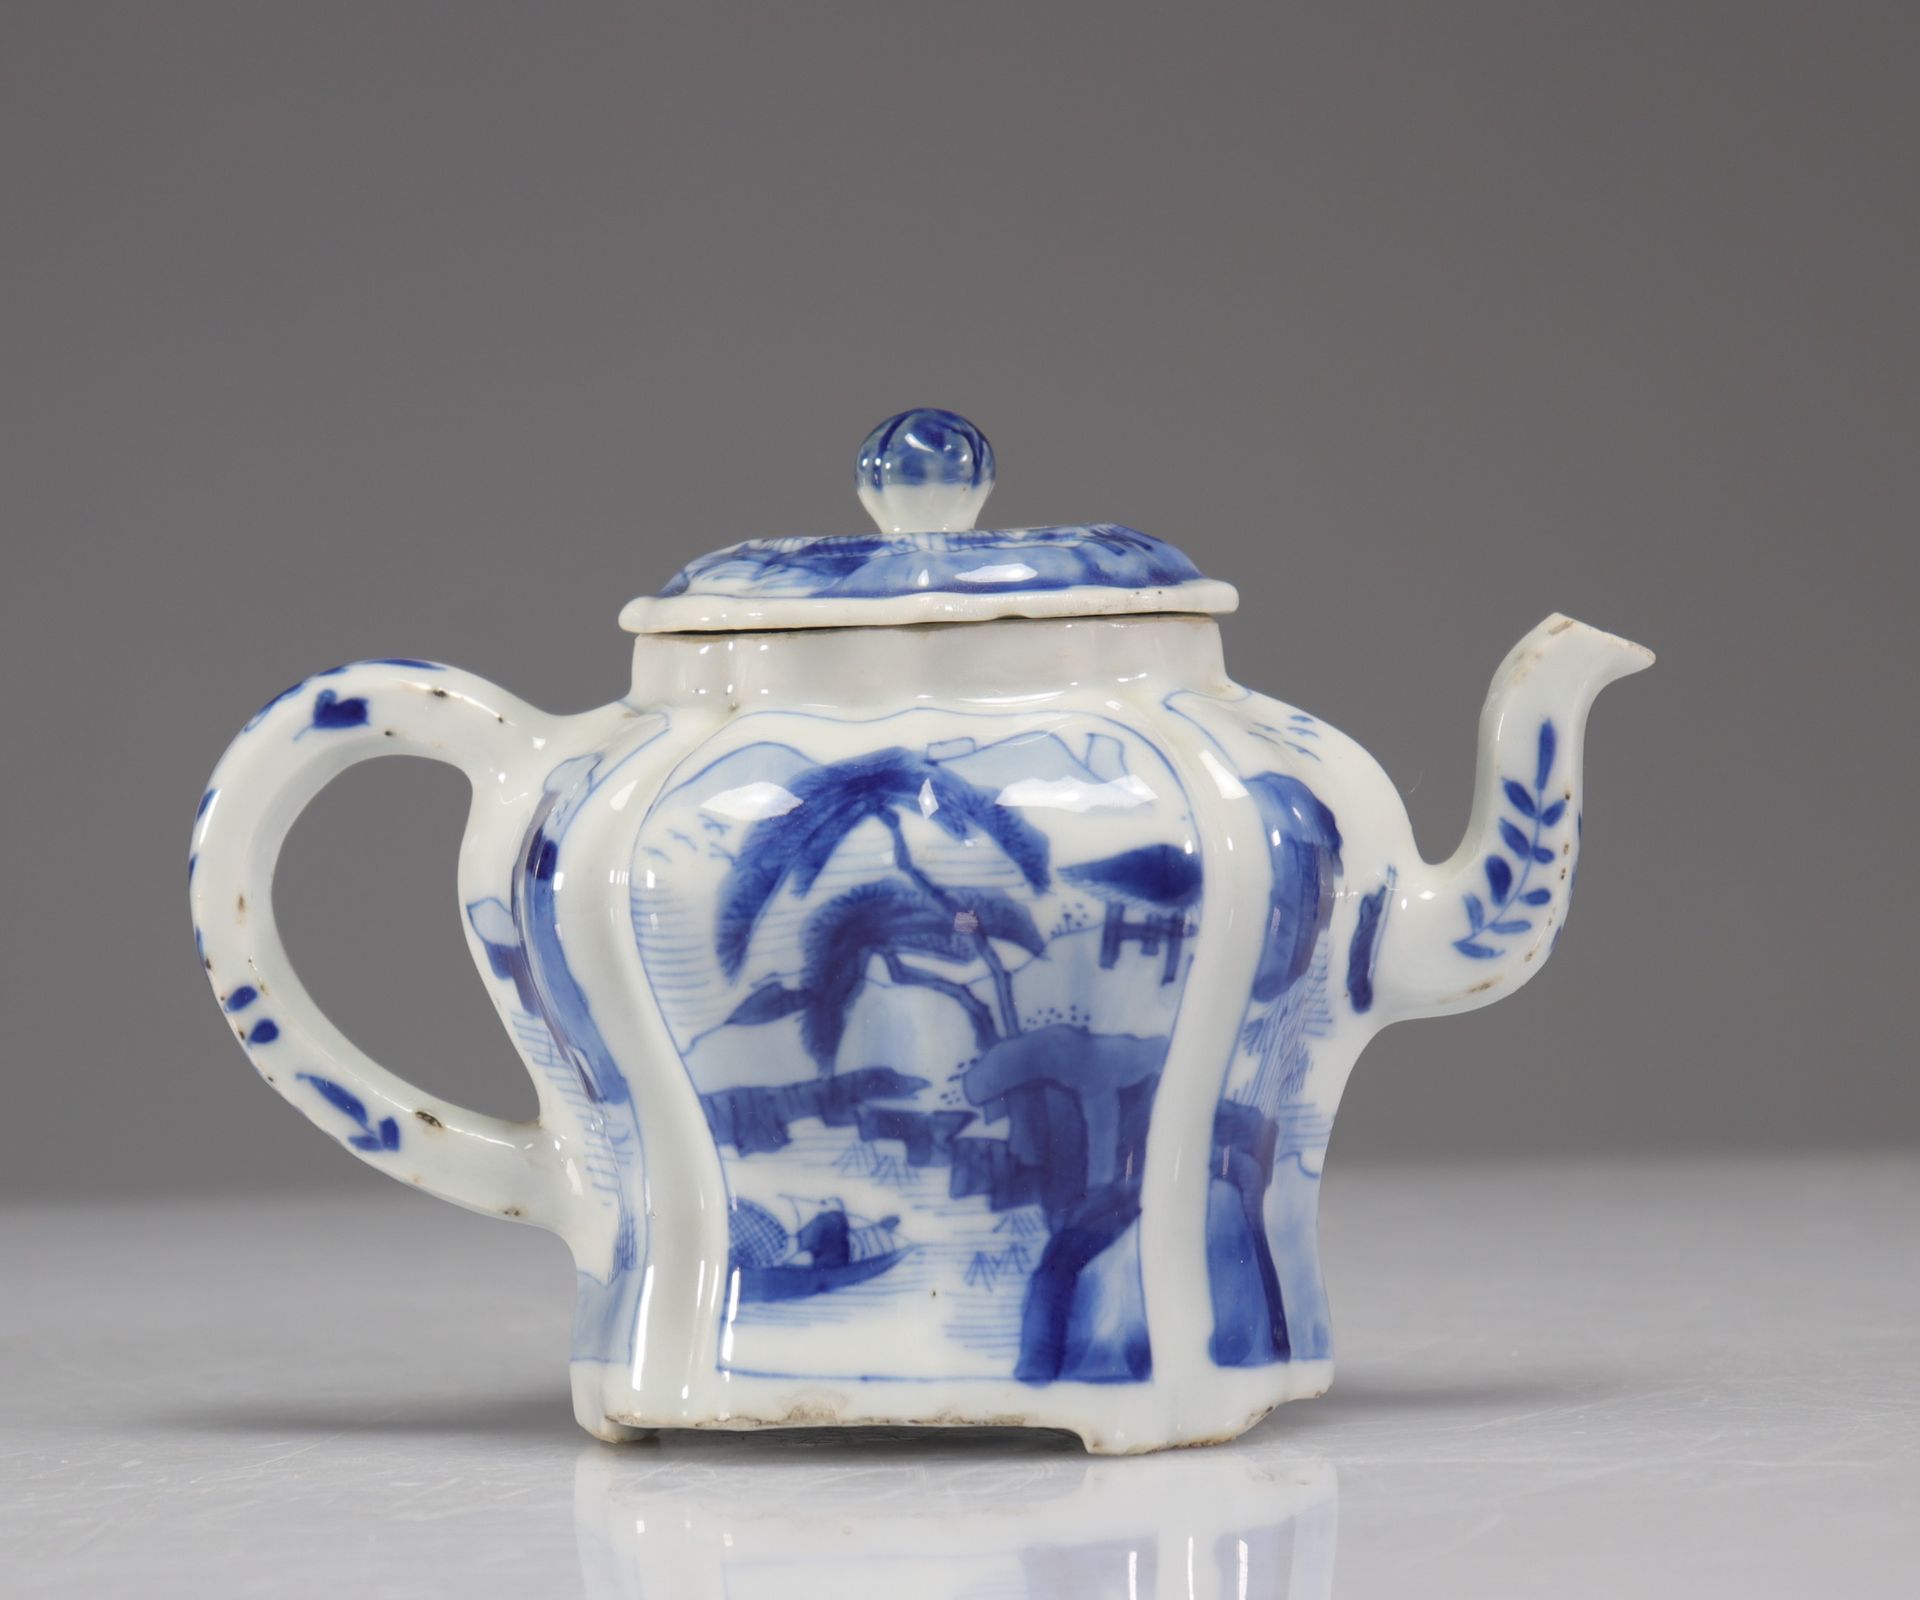 Null 白色和蓝色的茶壶 18世纪
重量：0克
地区：中国